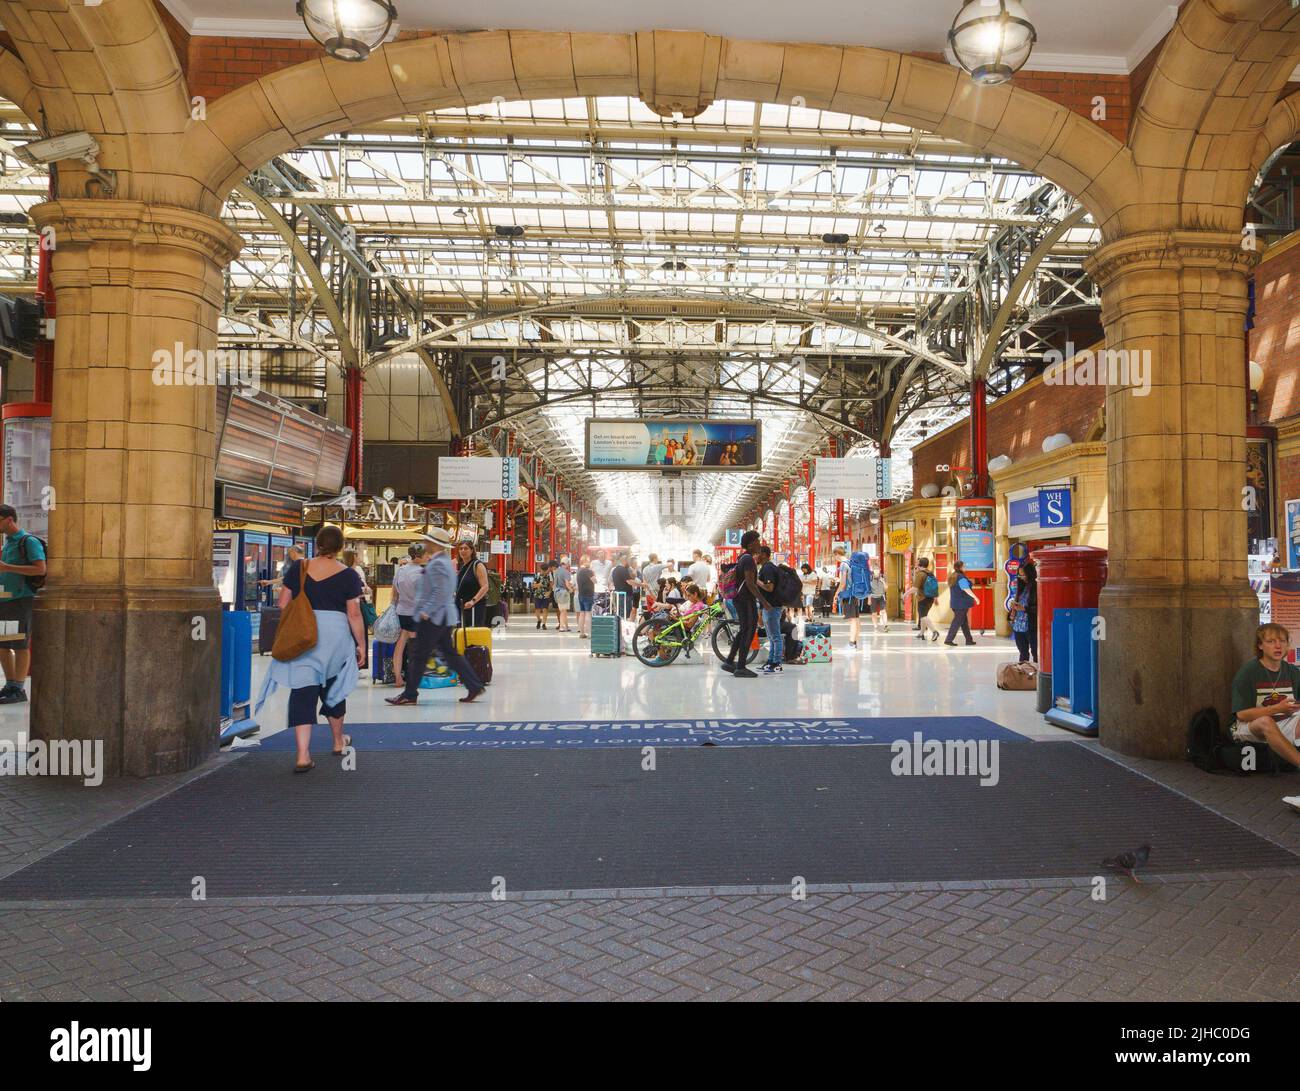 Una instantánea dentro de la estación Marylebone, Londres, Reino Unido (tomada desde la pasarela pública). Foto de stock